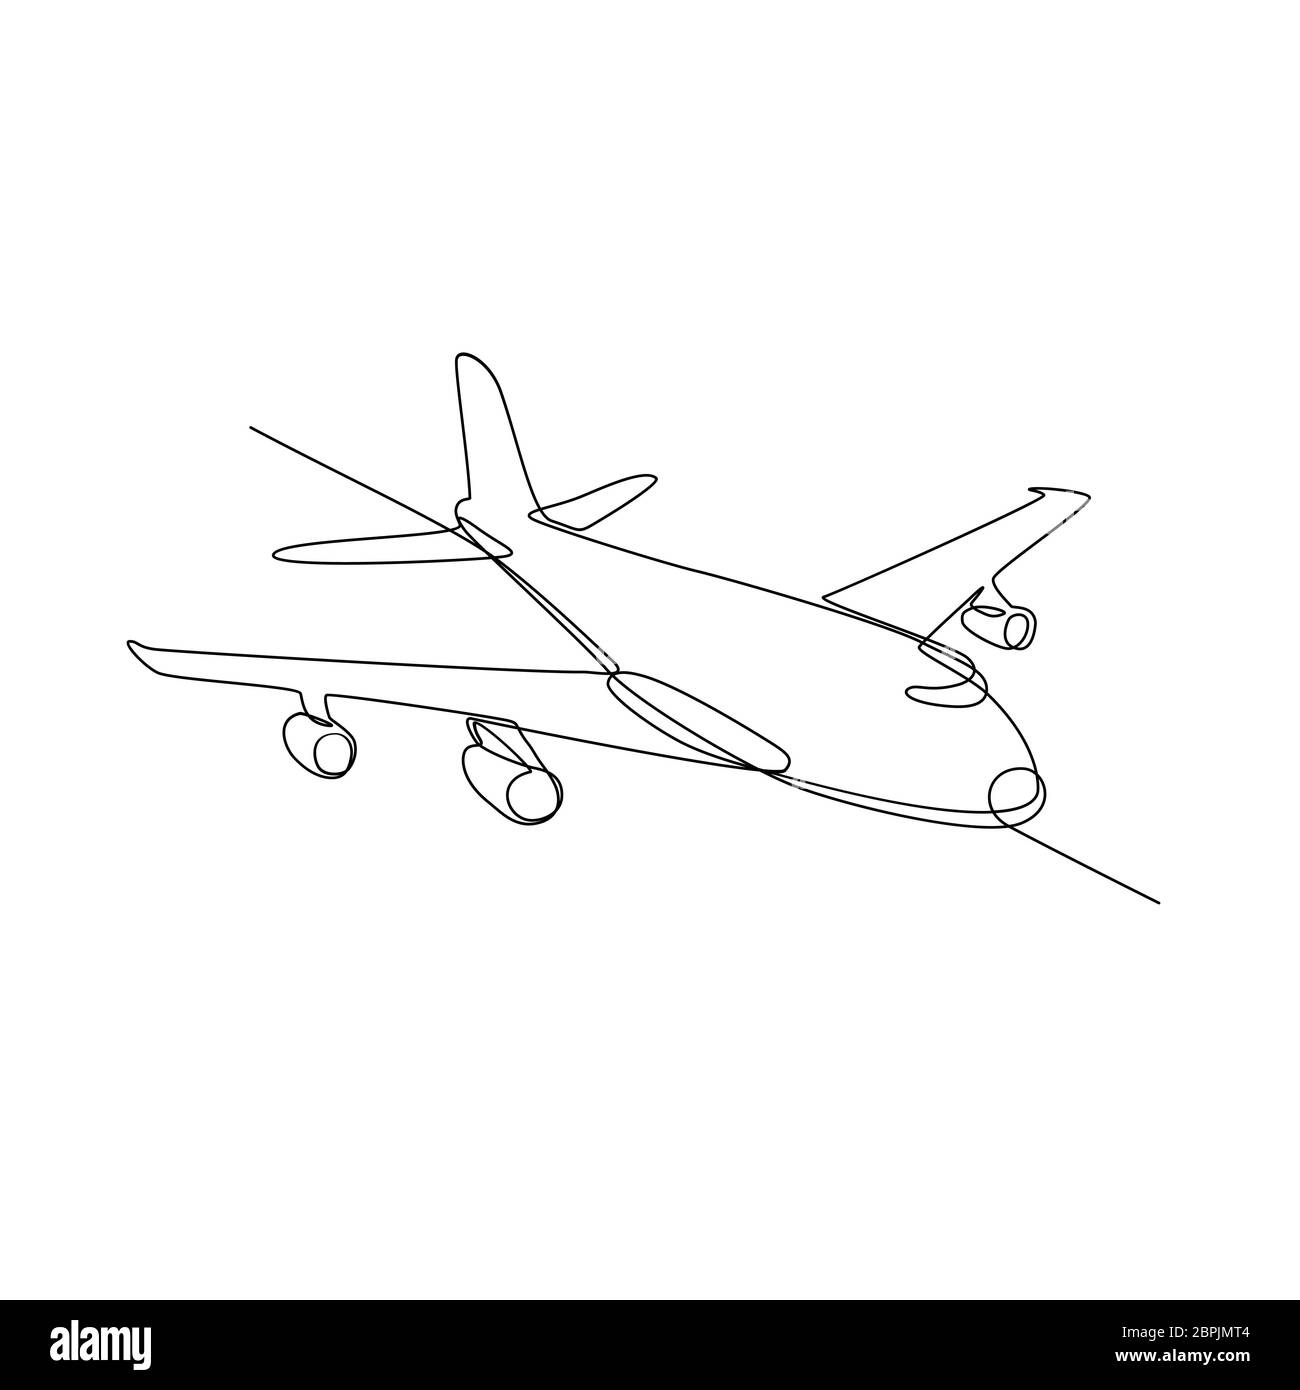 Linea continua illustrazione dei jumbo jet piano passeggero aereo di linea o aereo in volo in pieno volo a mezz aria fatto in bianco e nero in stile monolinea Foto Stock